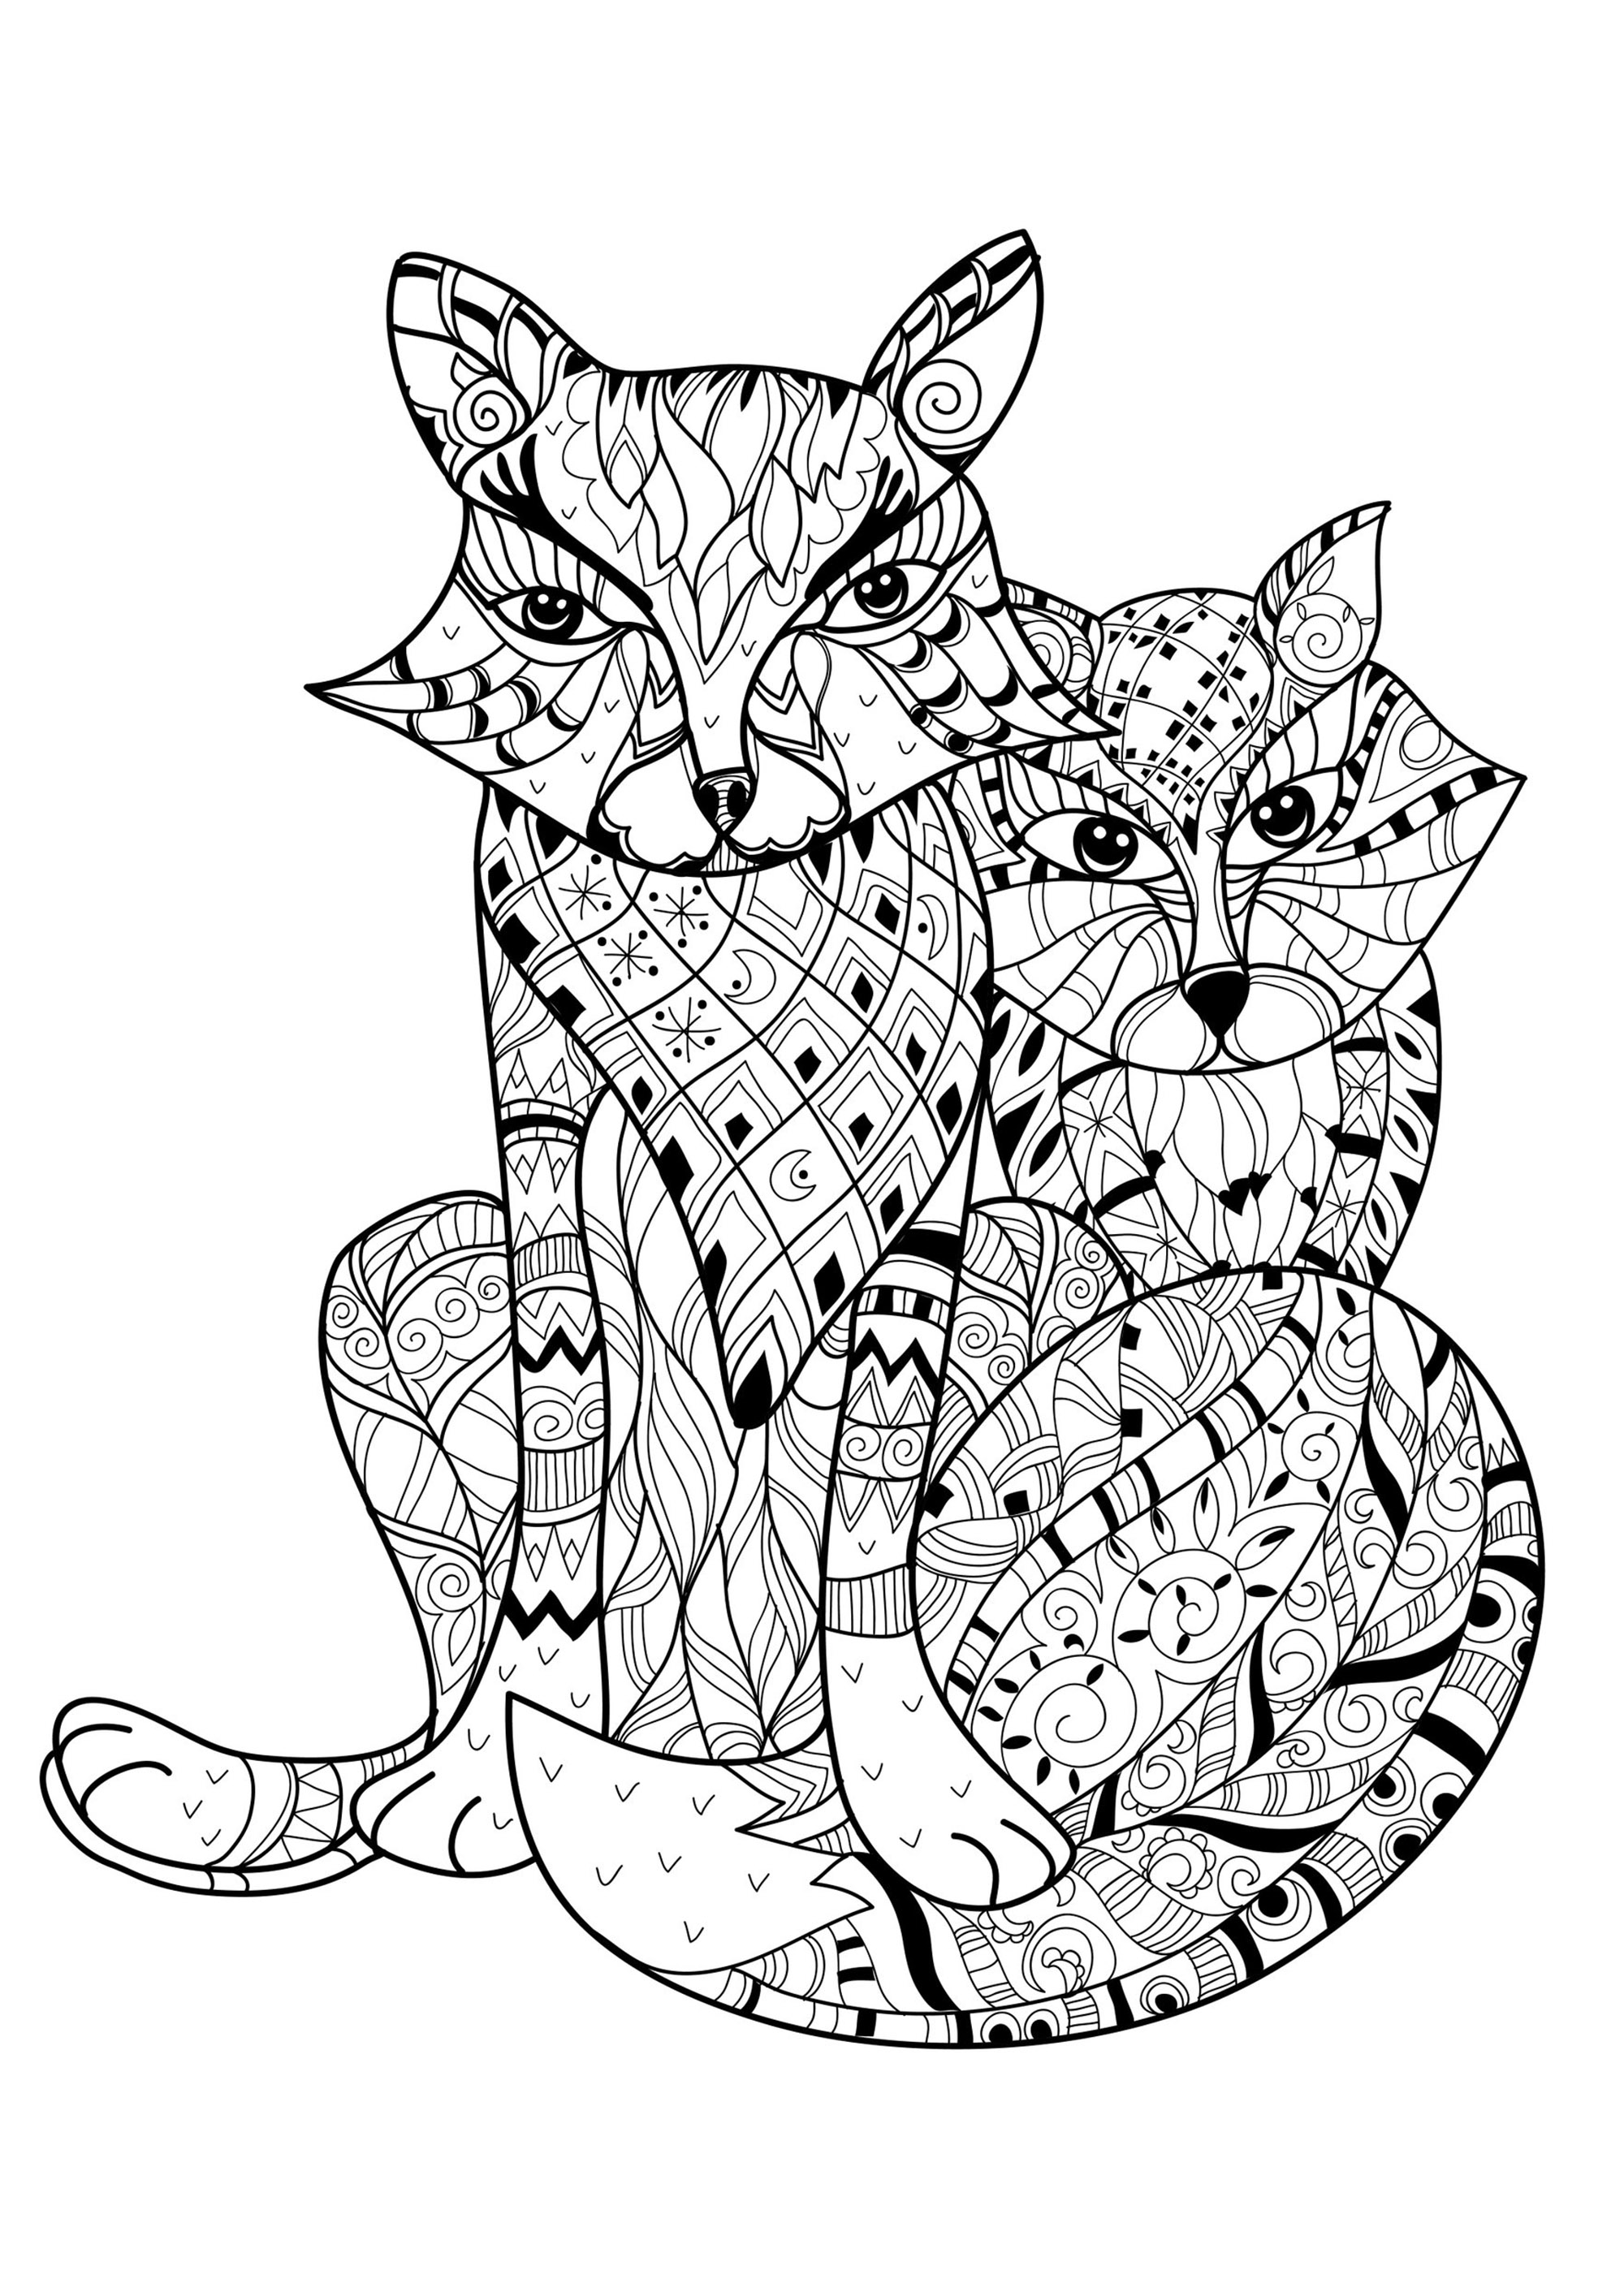 Colorate queste due volpi e i loro incredibili disegni, Artista : Yazzik   Fonte : 123rf